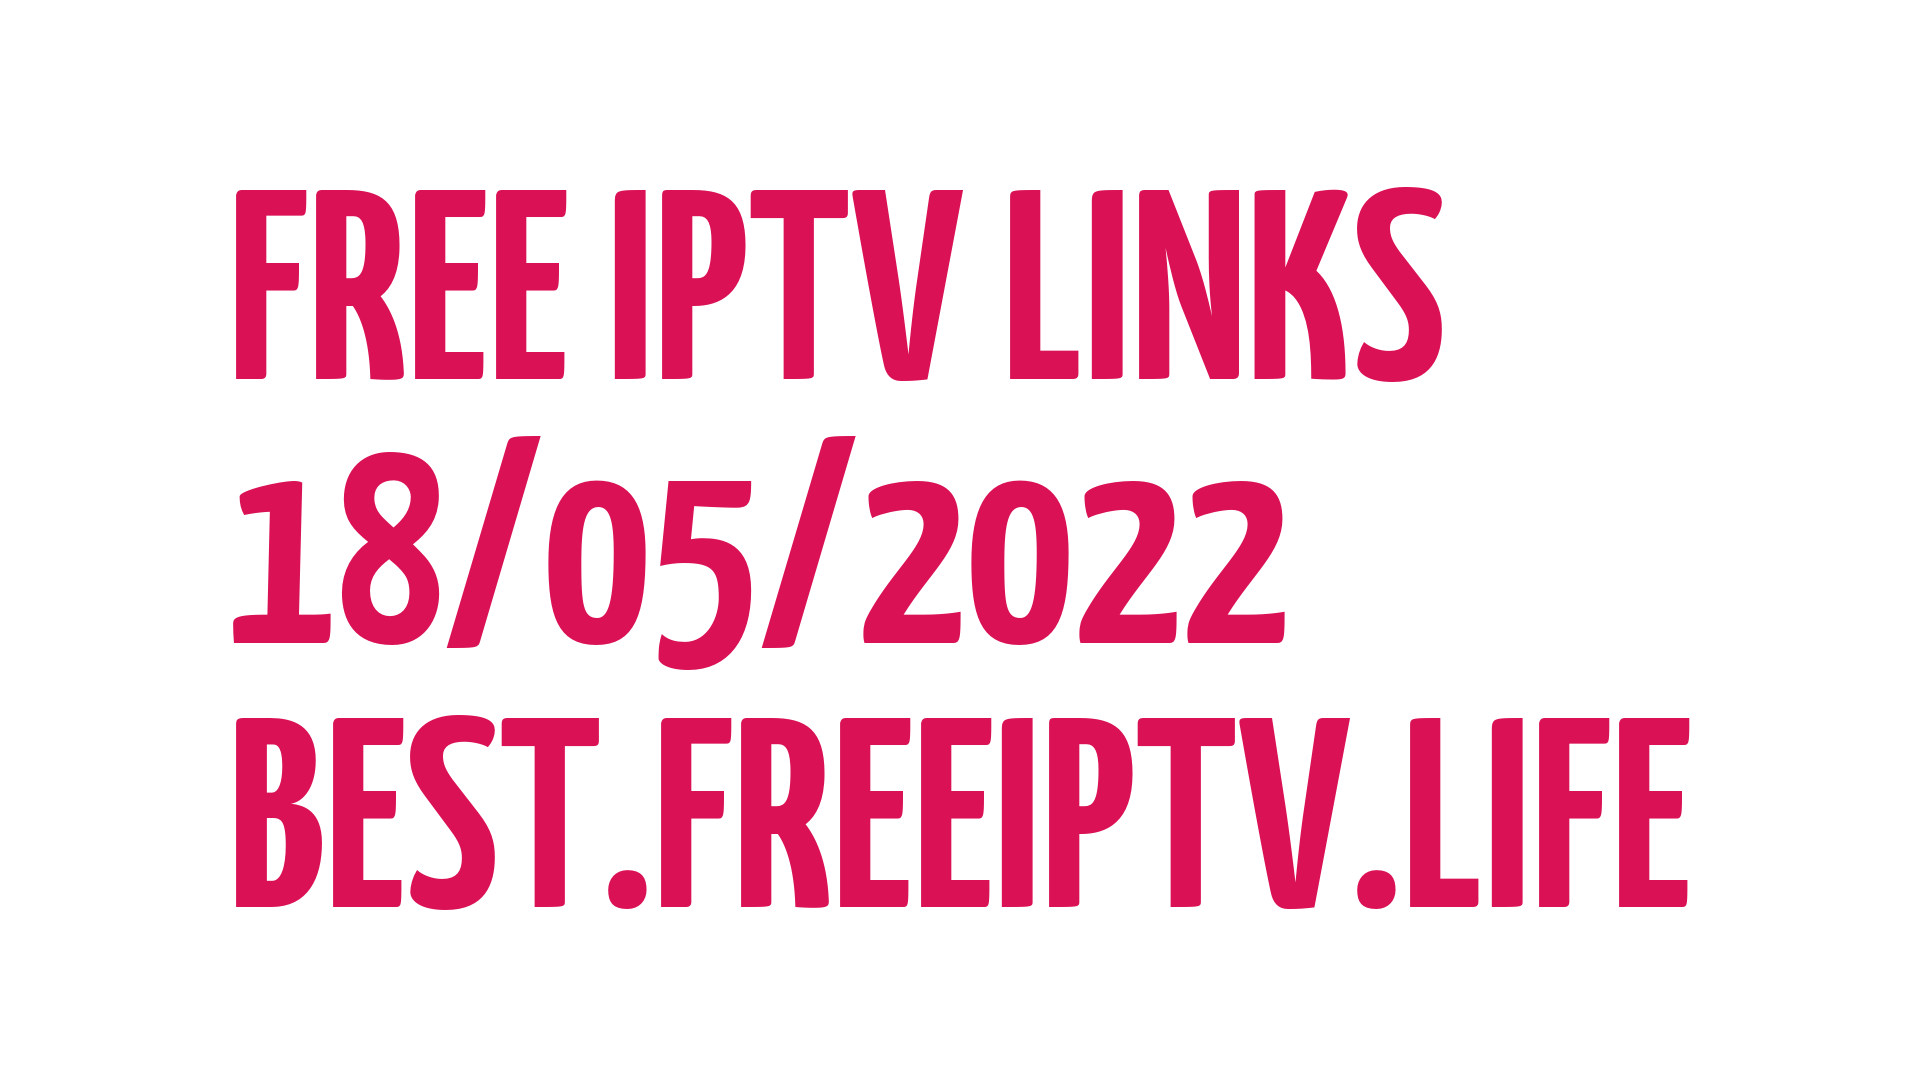 Free iptv links +18